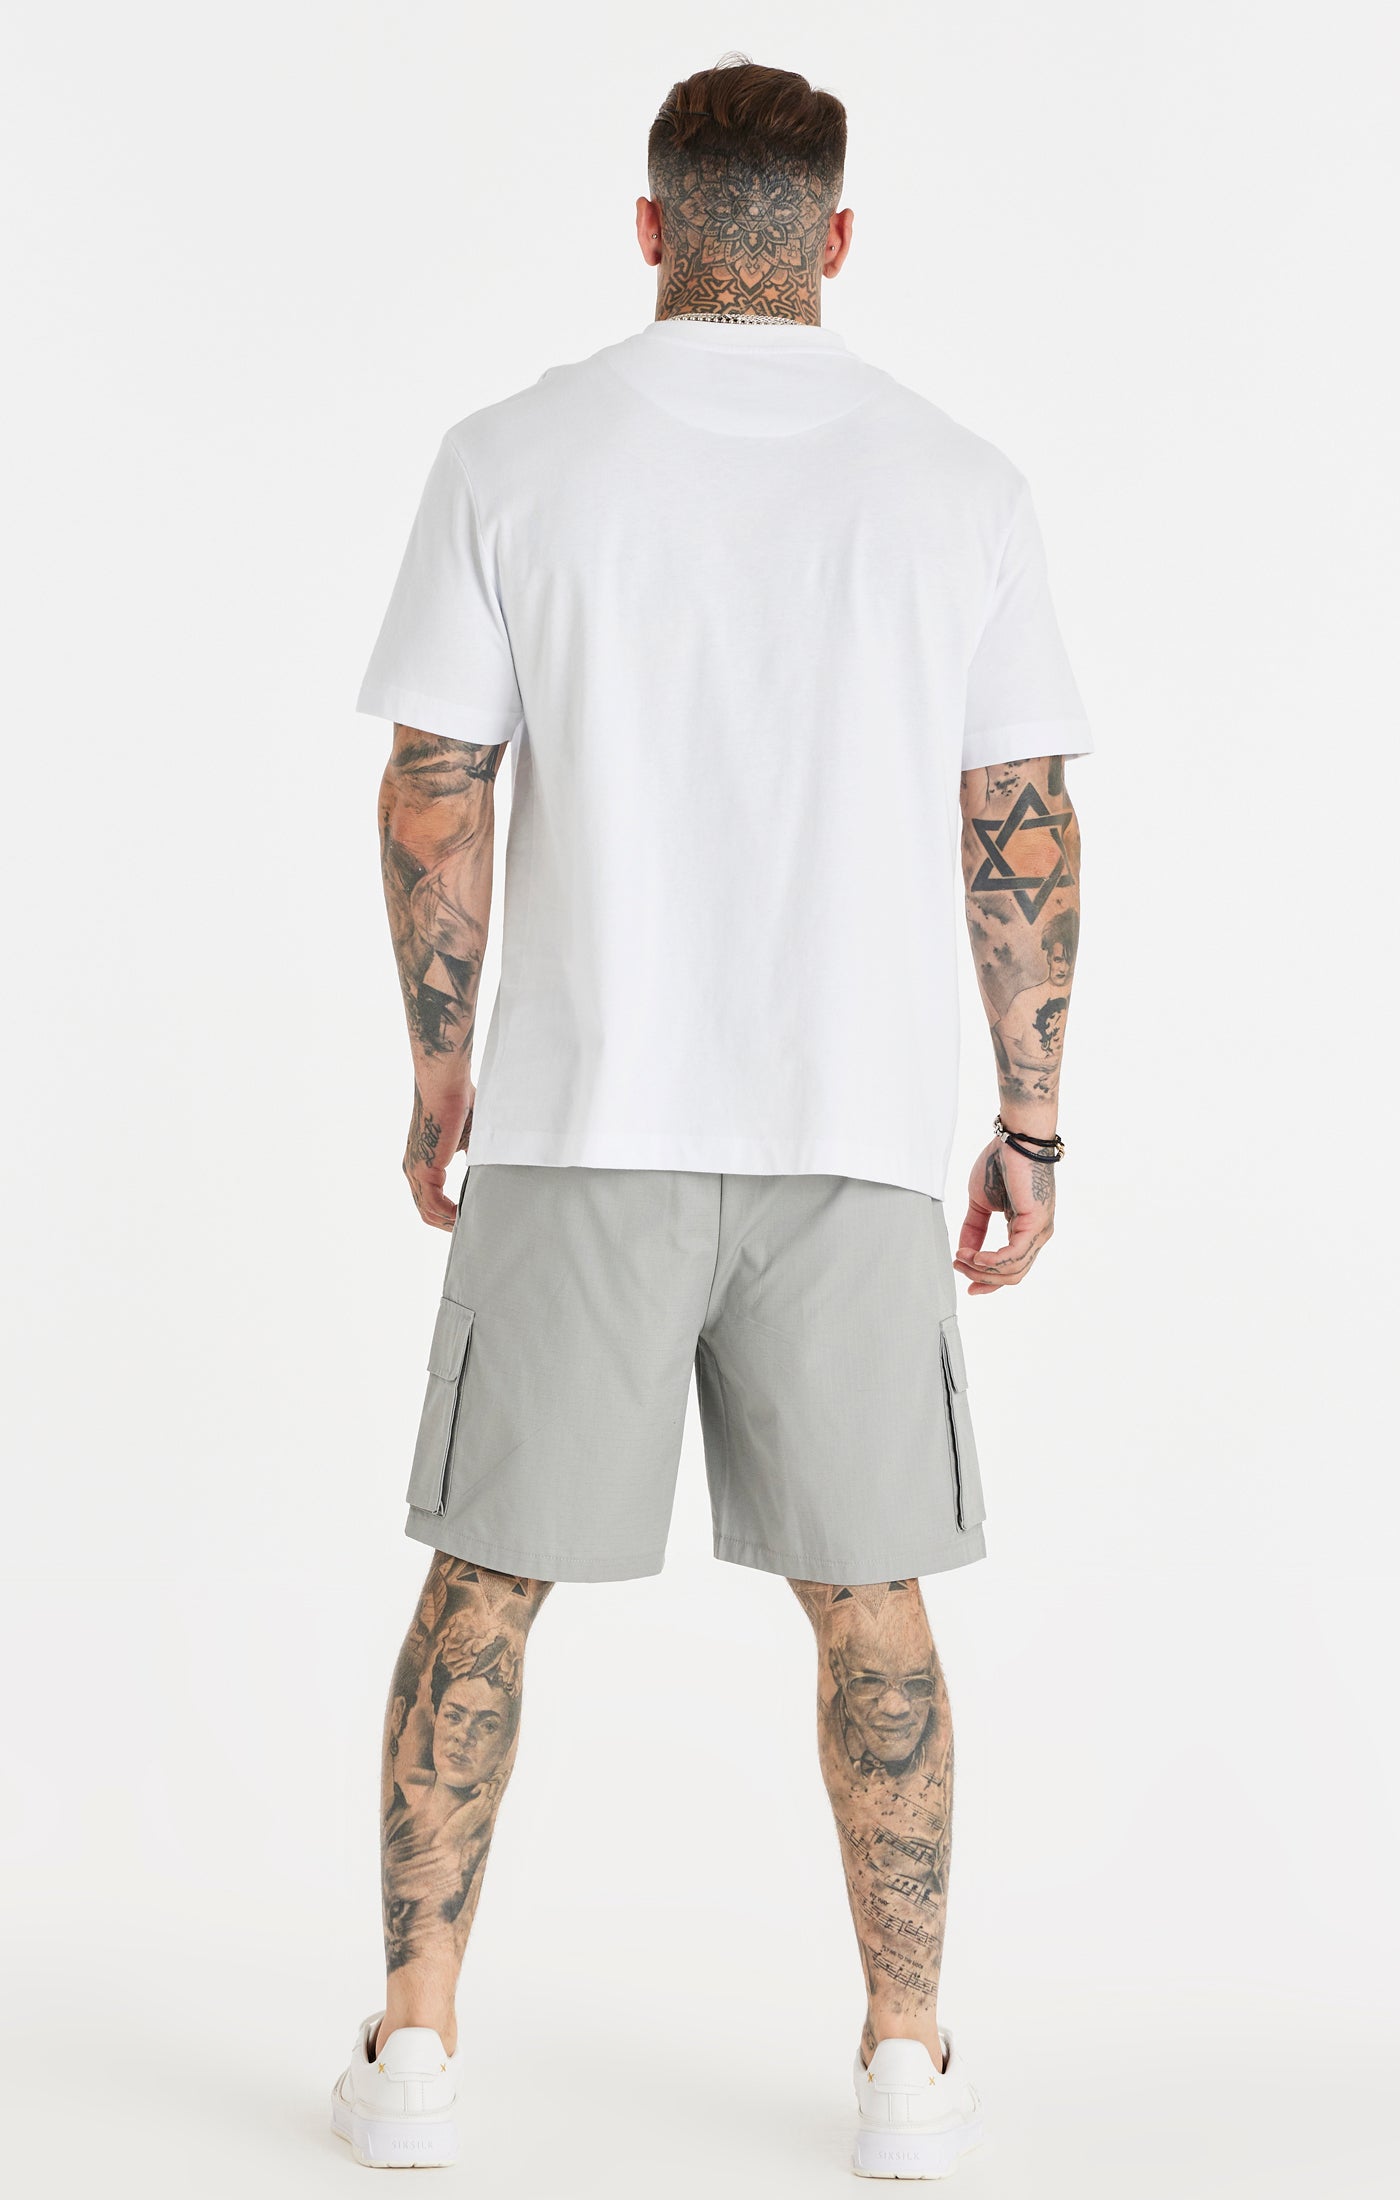 Weißes entspanntes T-Shirt mit Kettenaufdruck (4)